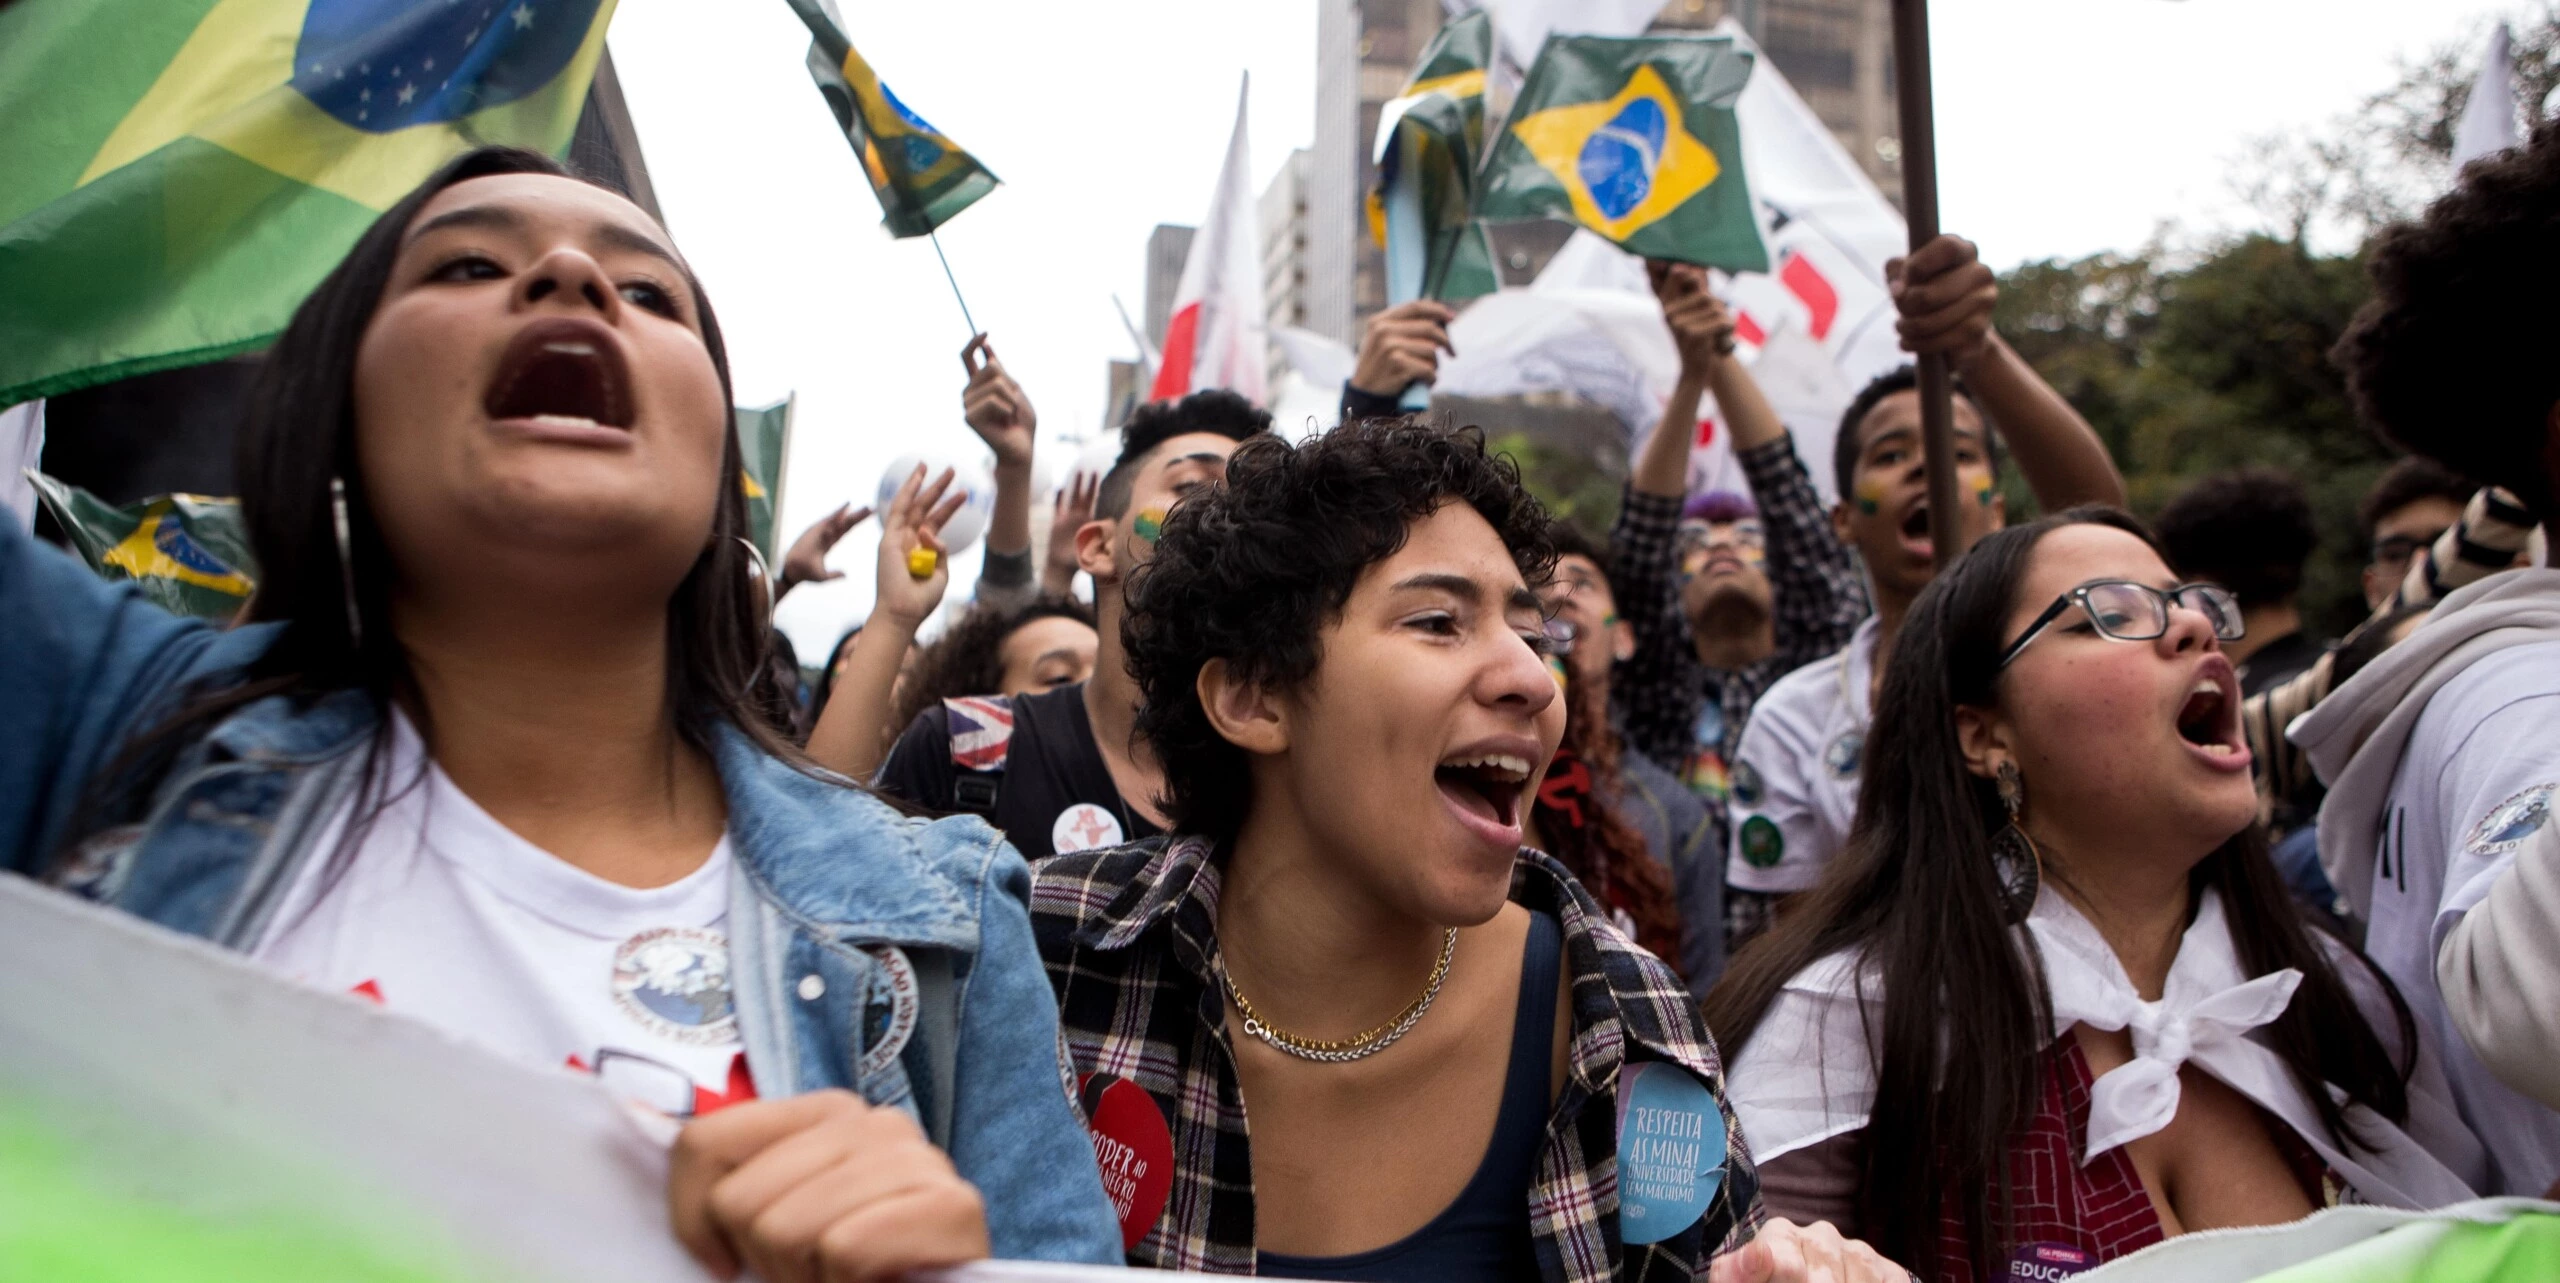 Estudantes protestam em defesa da educação em frente ao Museu de Arte de São Paulo, na avenida Paulista, em São Paulo, no dia 13 de agosto. Os estudantes defendem ainda a autonomia das universidades e são contrários ao programa Future-se, do Ministério da Educação.